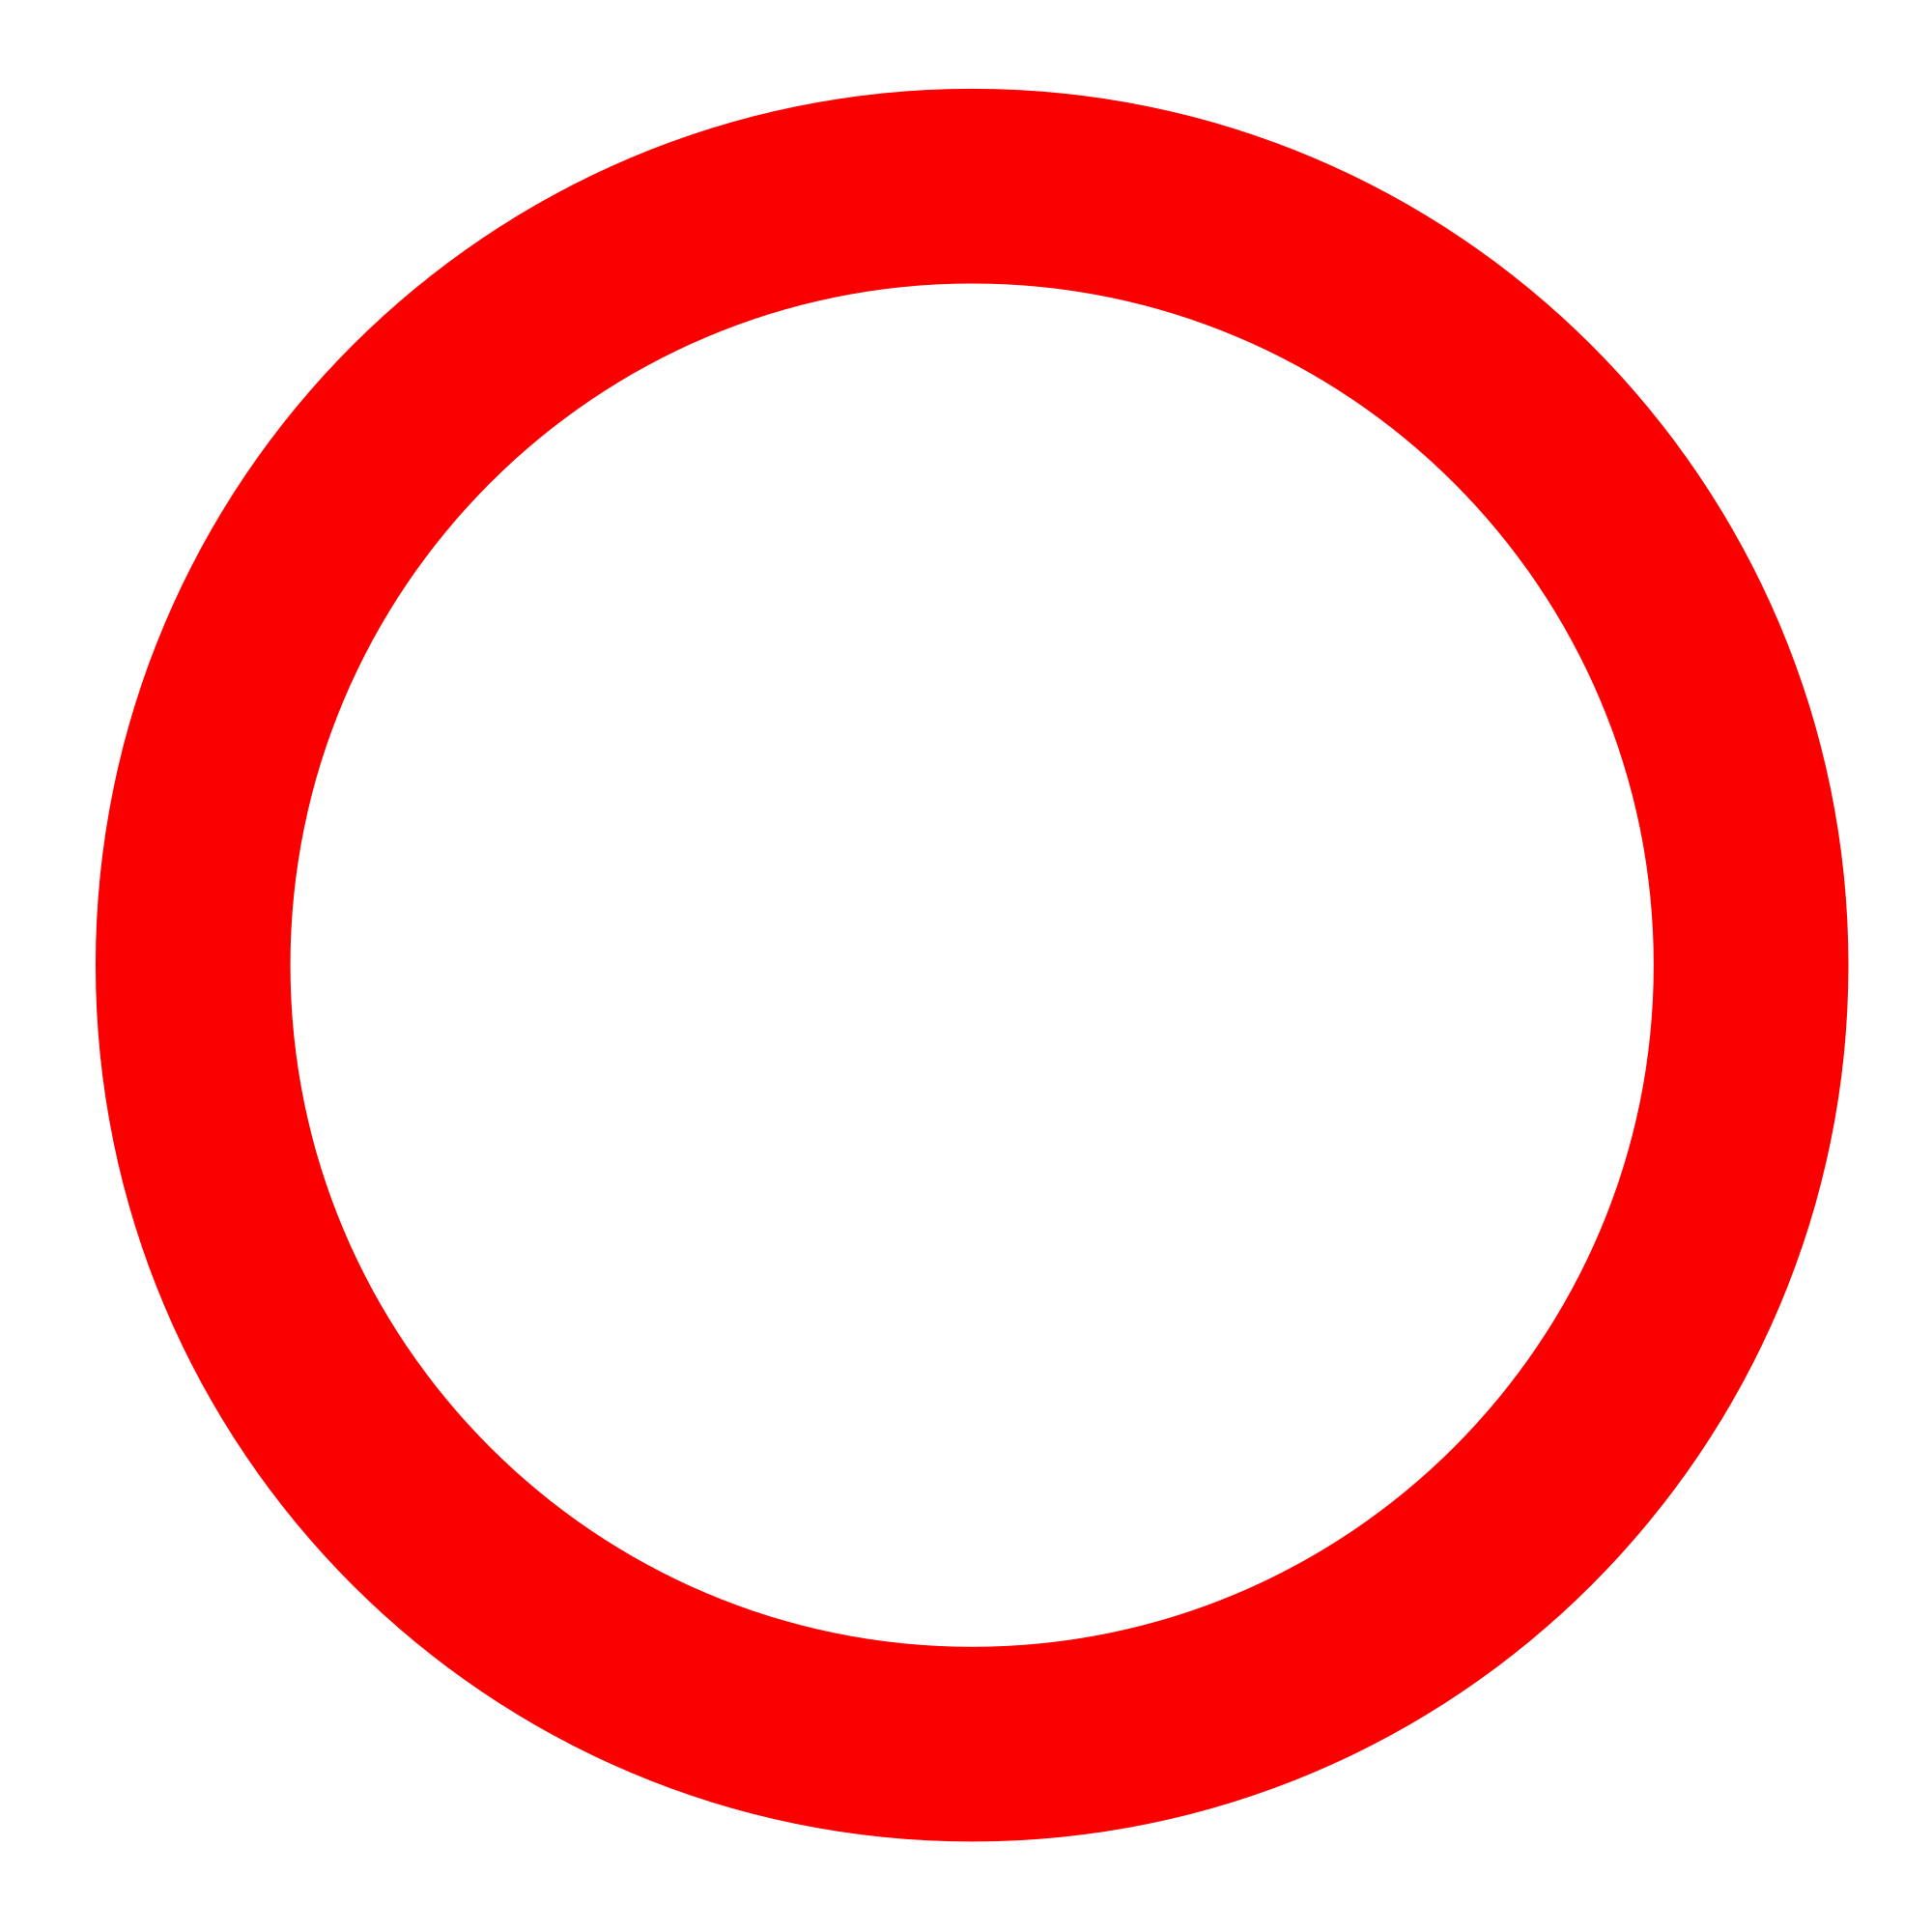 Круга в любой форме. Красный круг. Красный кружок. Красное кольцо. Красный кружок на прозрачном фоне.